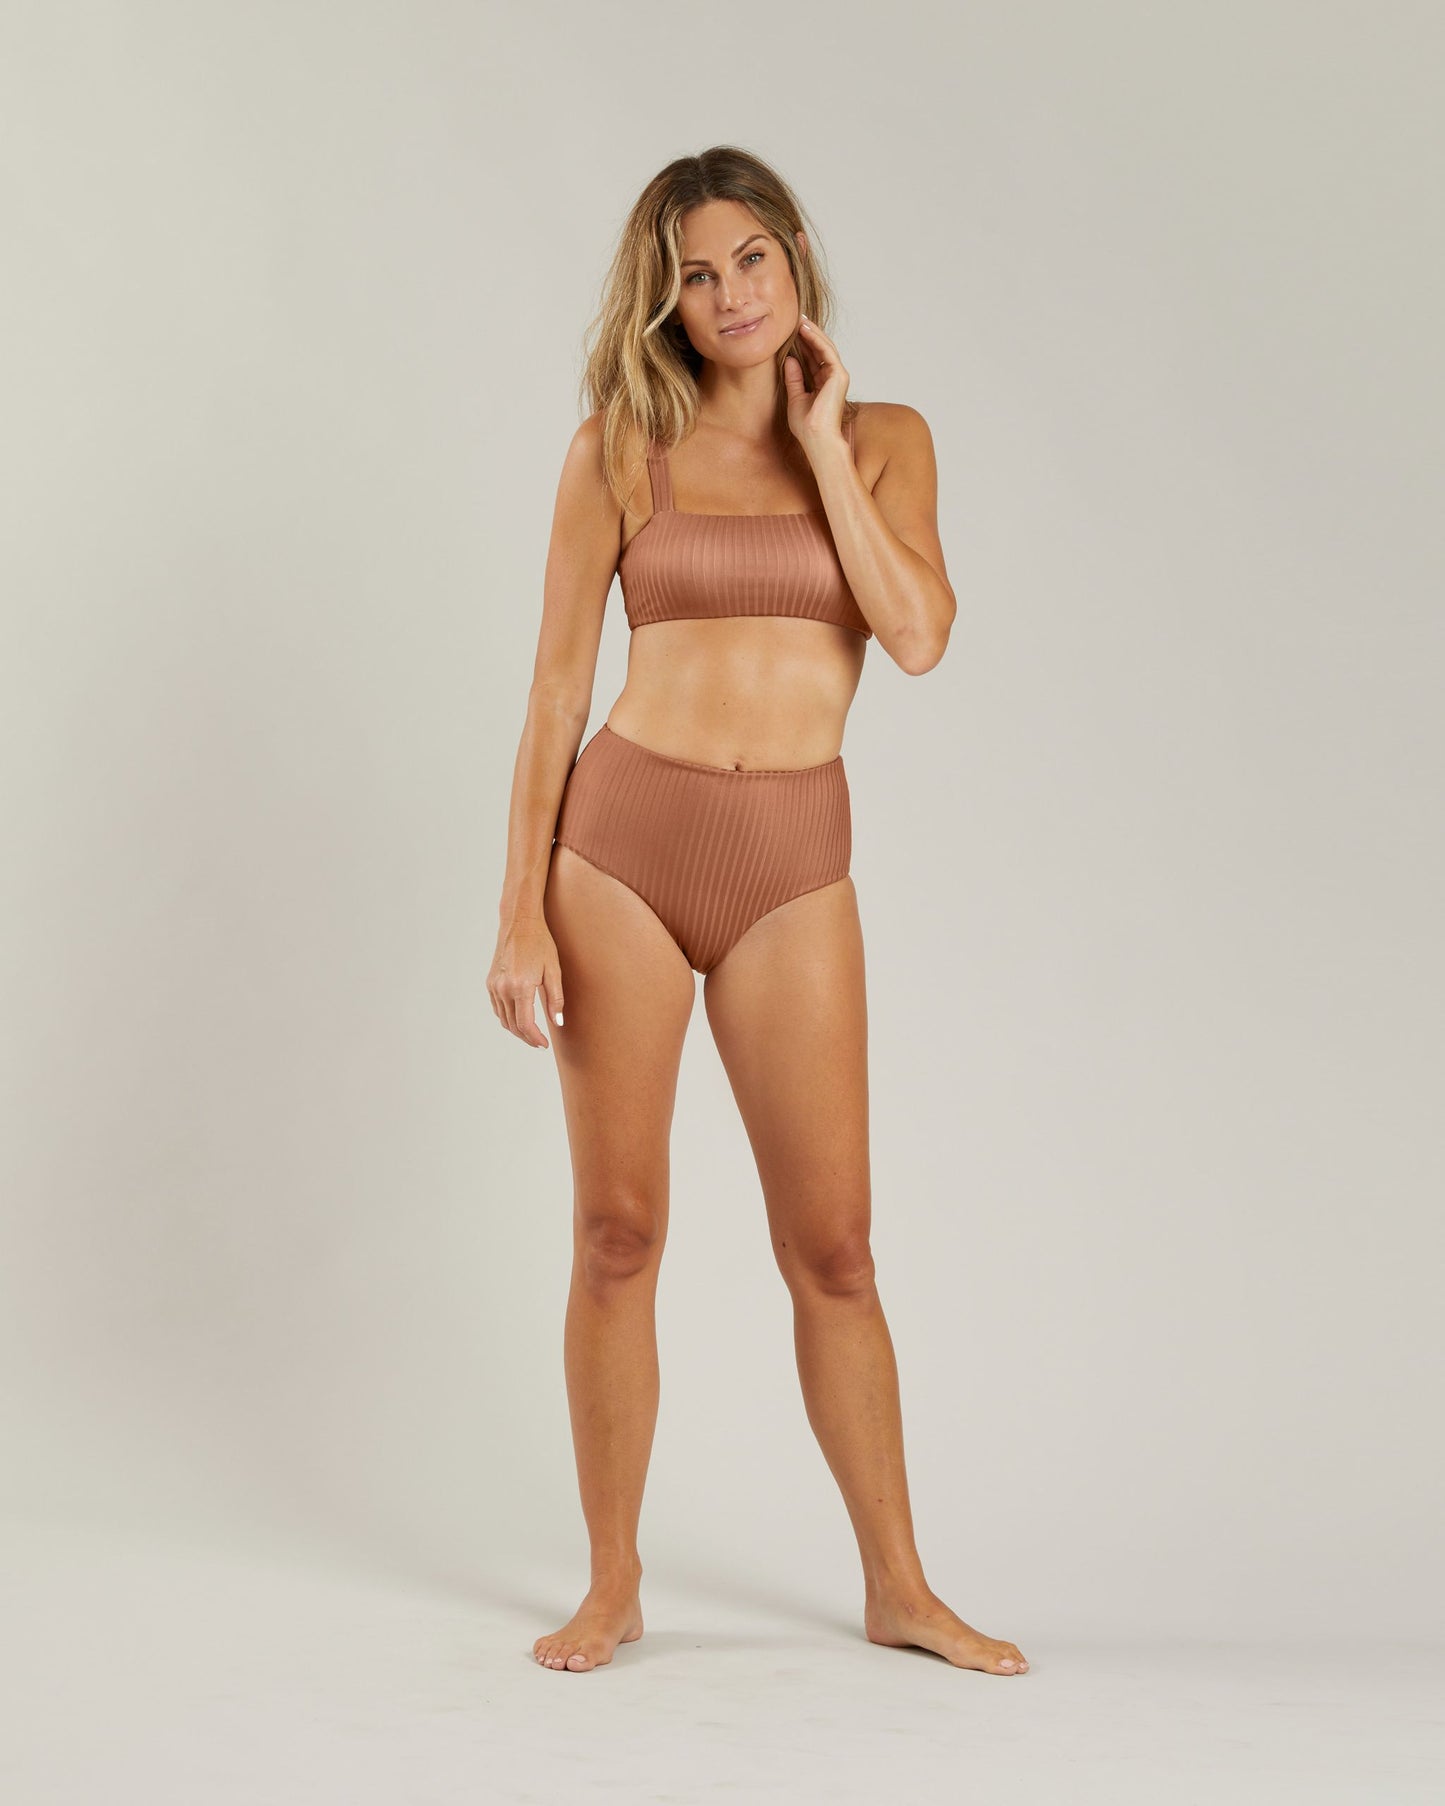 Rylee + Cru - Lany Bikini Top - Rust - Women's